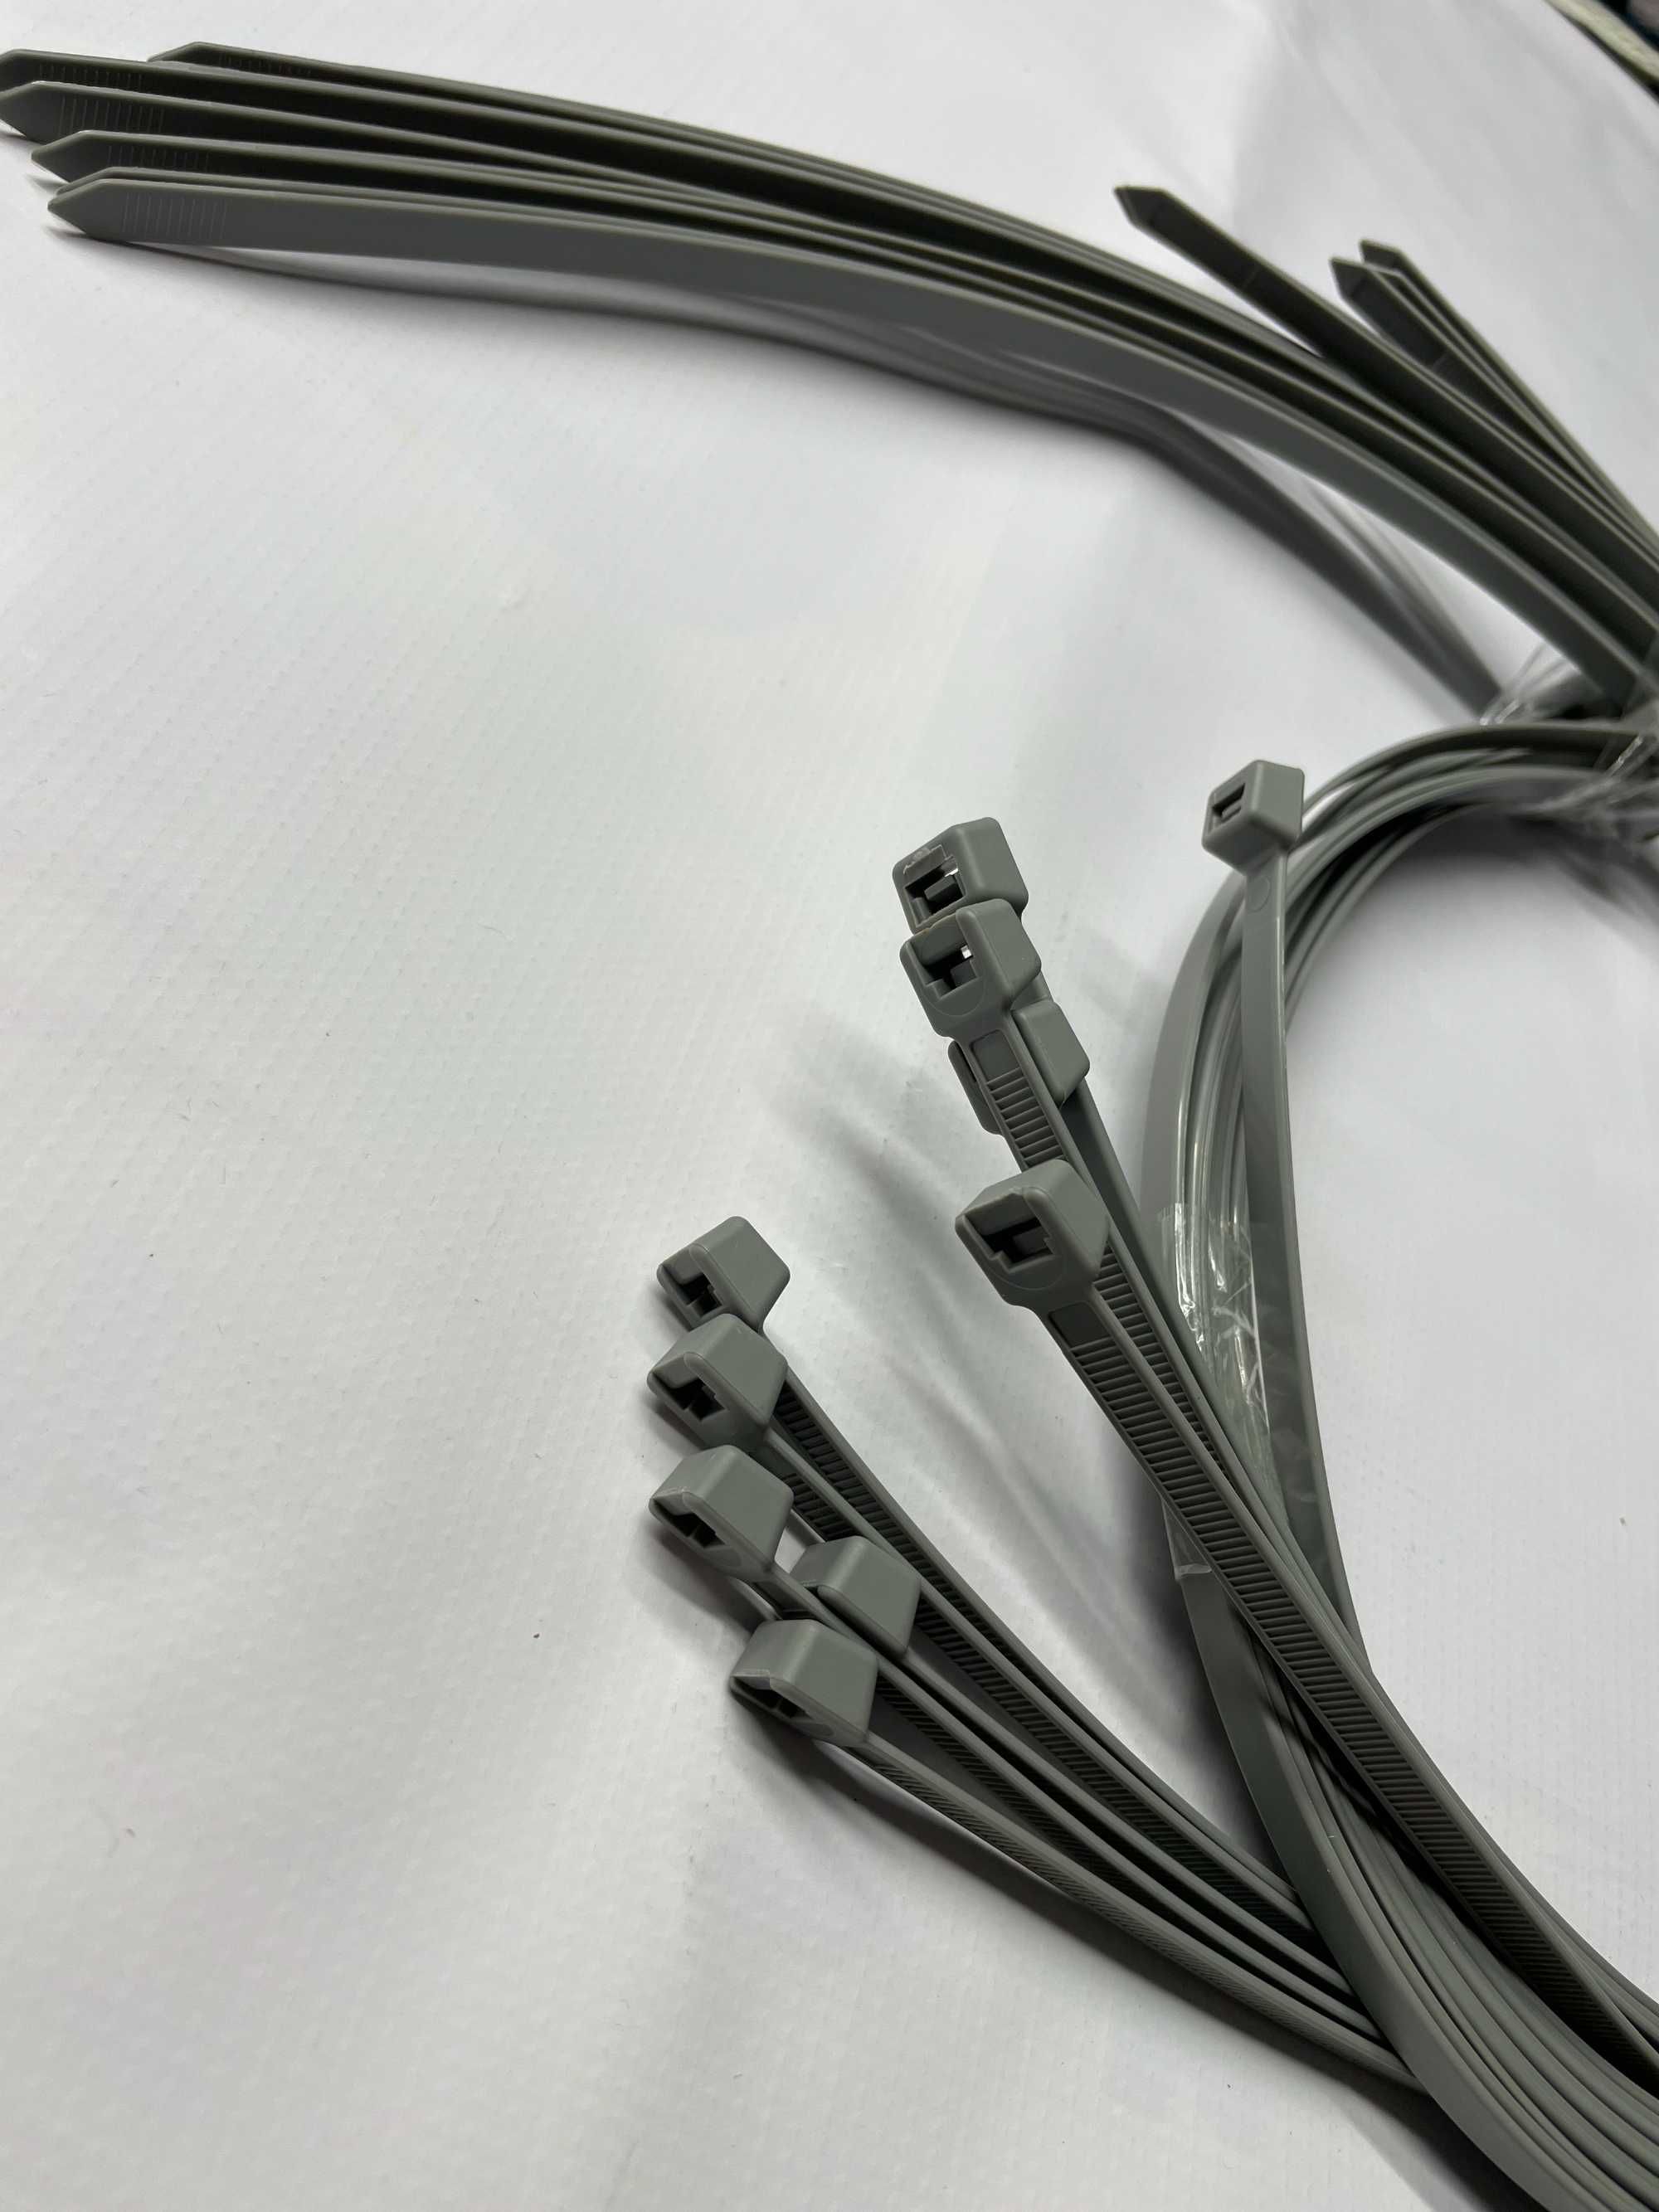 Szare opaski kablowe, bardzo długie krawaty 9 mm x 750 mm 10szt